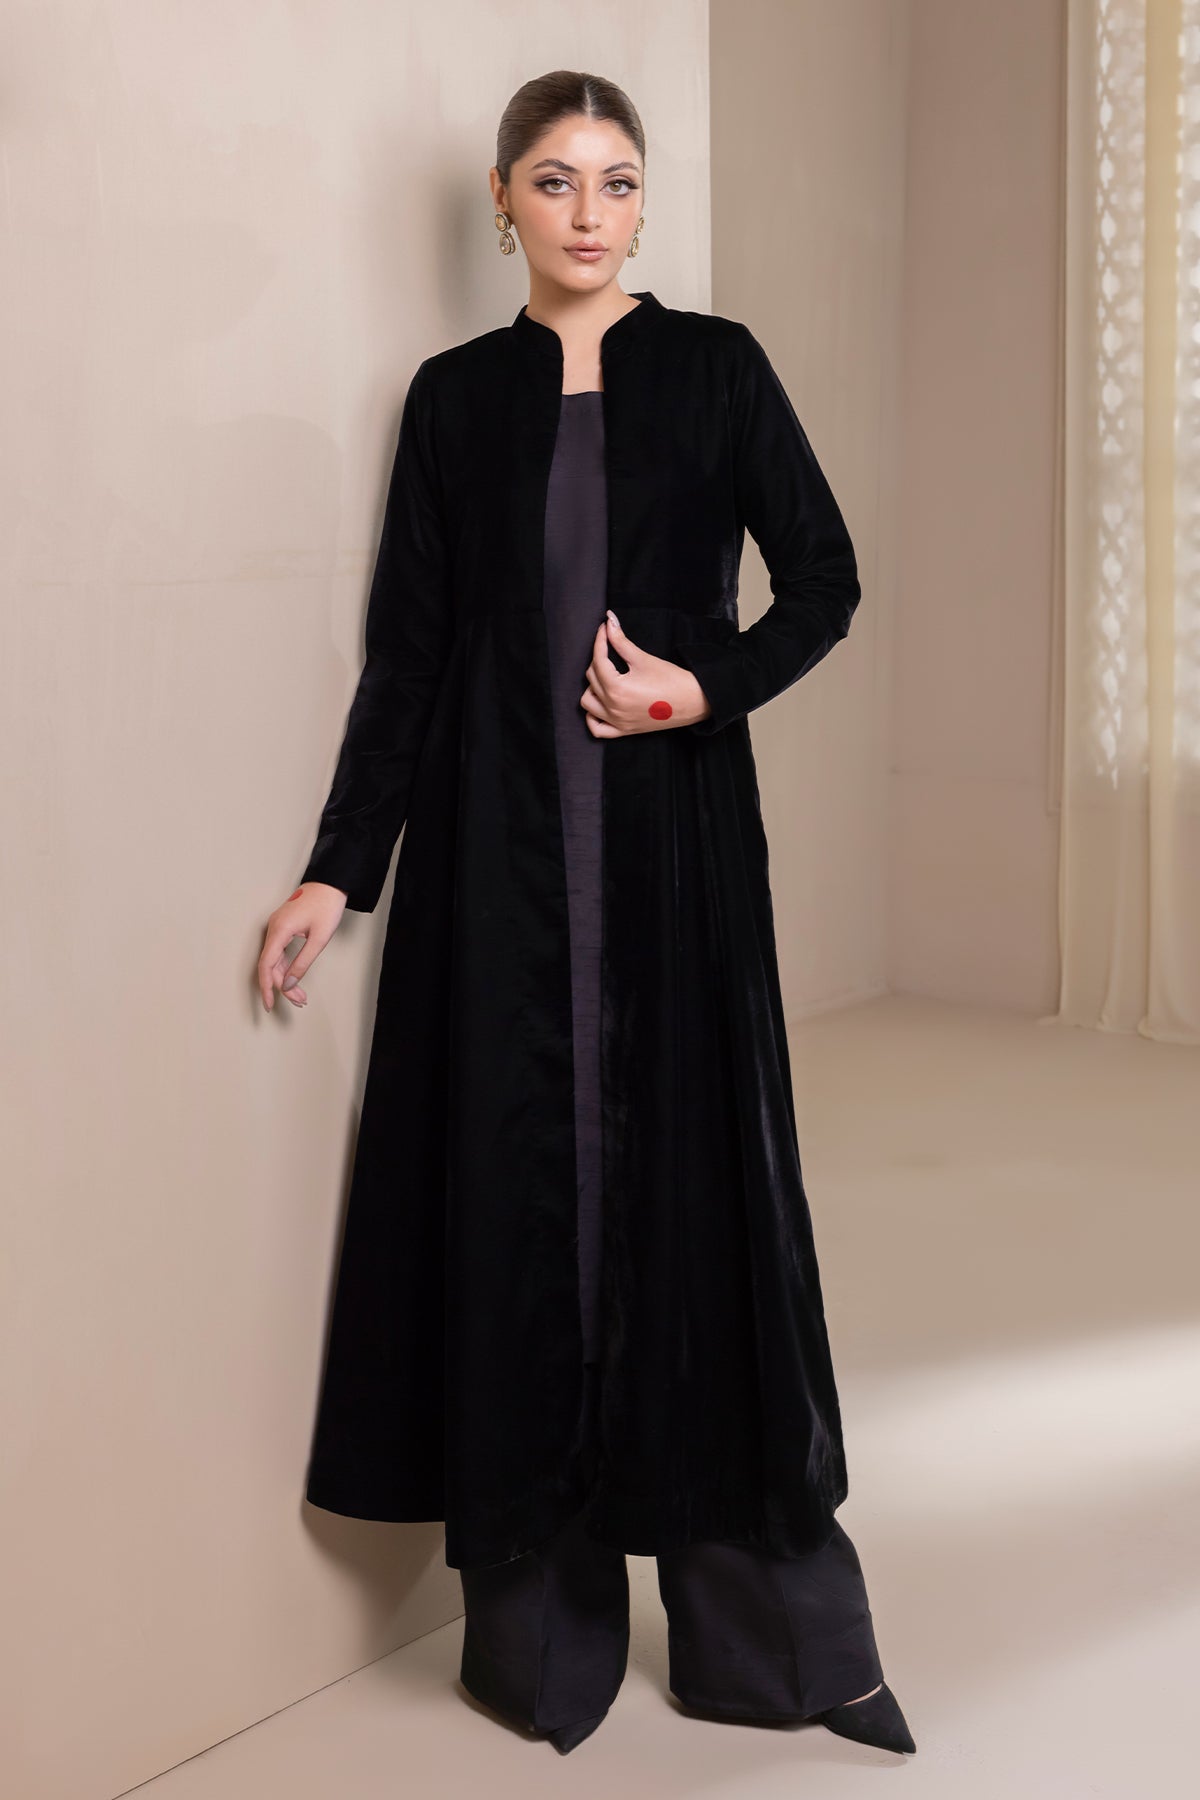 Velvet | Velvet dress designs, Frock design, Stylish dress designs